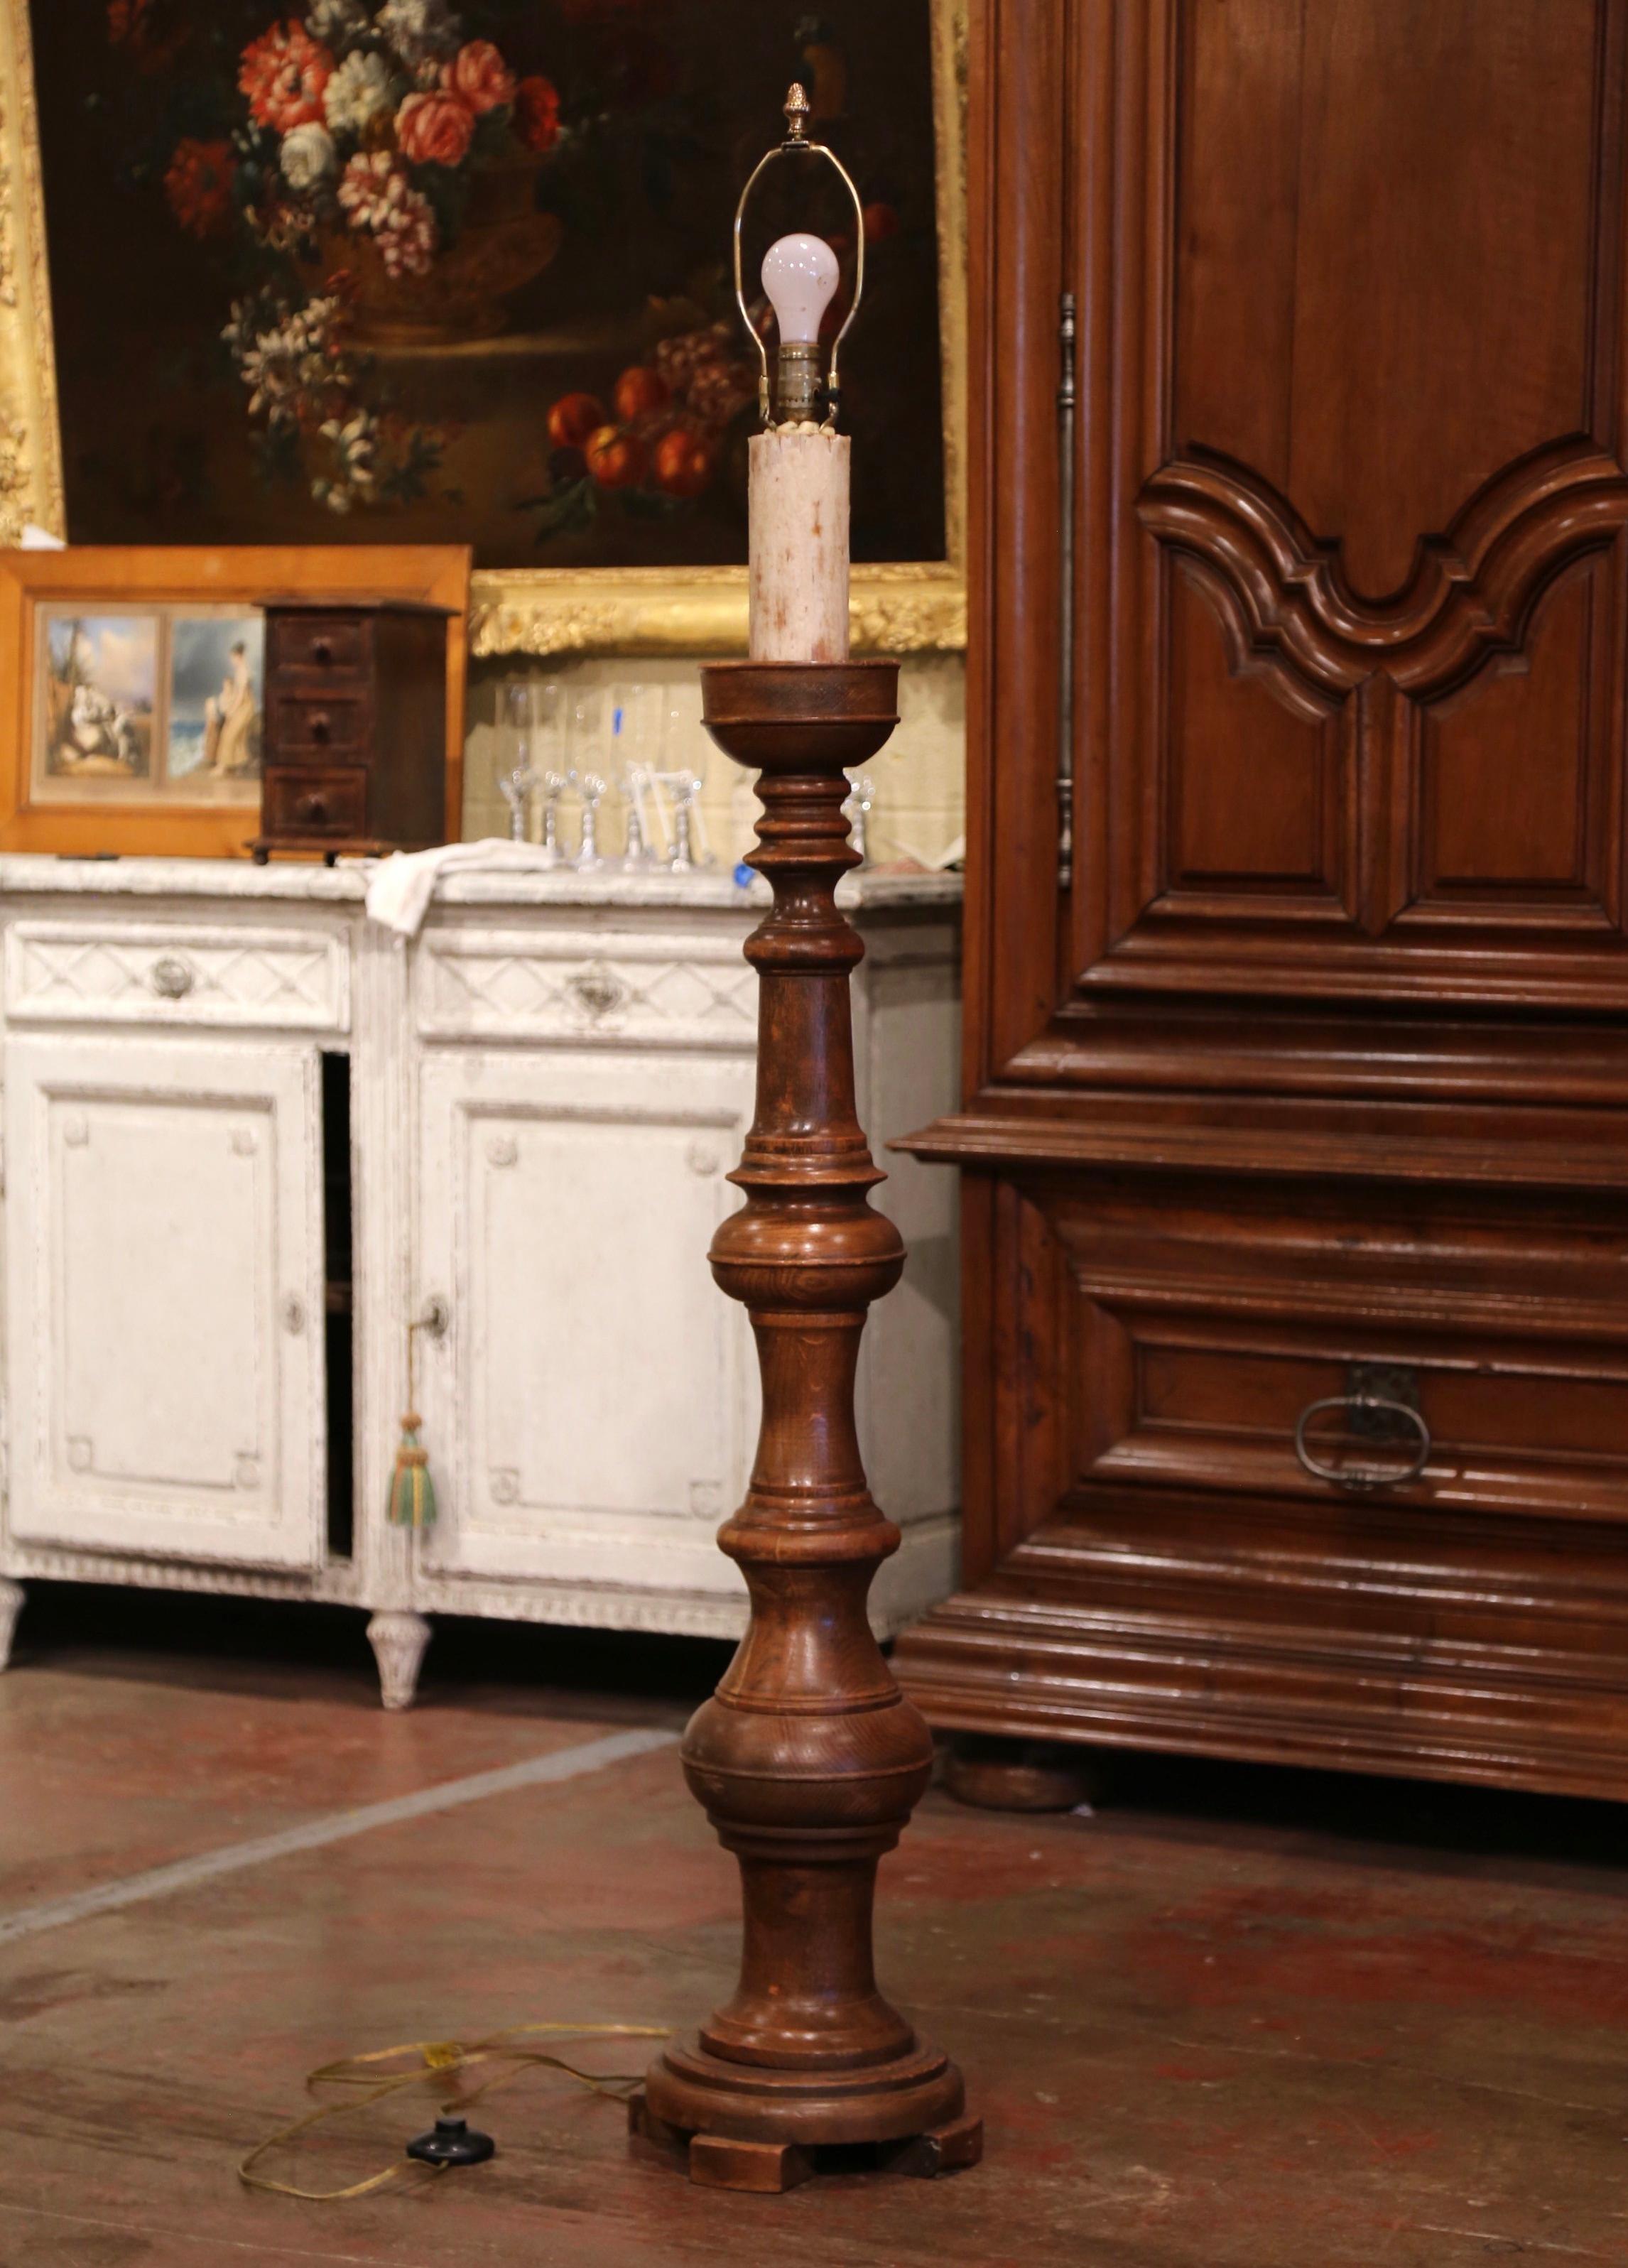 Diese elegante antike geschnitzte Lampe wurde um 1950 in Frankreich hergestellt. Die Leuchte steht auf einem runden Sockel mit drei kleinen Füßen über einem langen, gedrehten Schaft. Die Lampe mit einem einzigen zentralen Licht ist mit einer großen